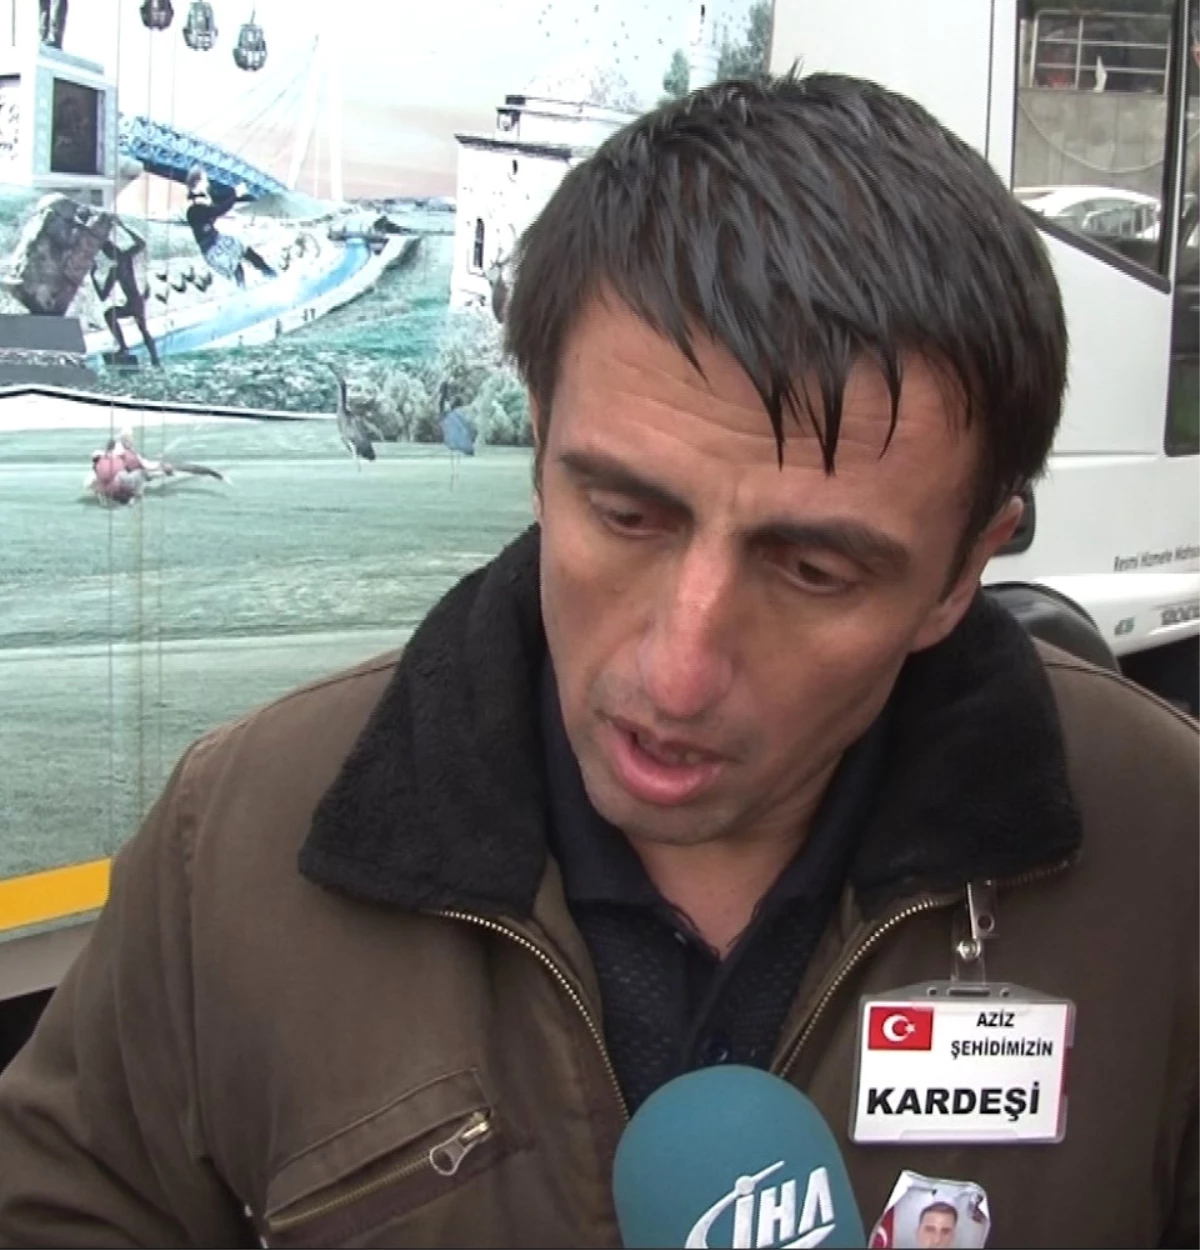 Samsunlu Şehit Pilotun Kardeşi Konuştu: "Köylüleri Kurtarmak İçin Kendini Feda Etti"